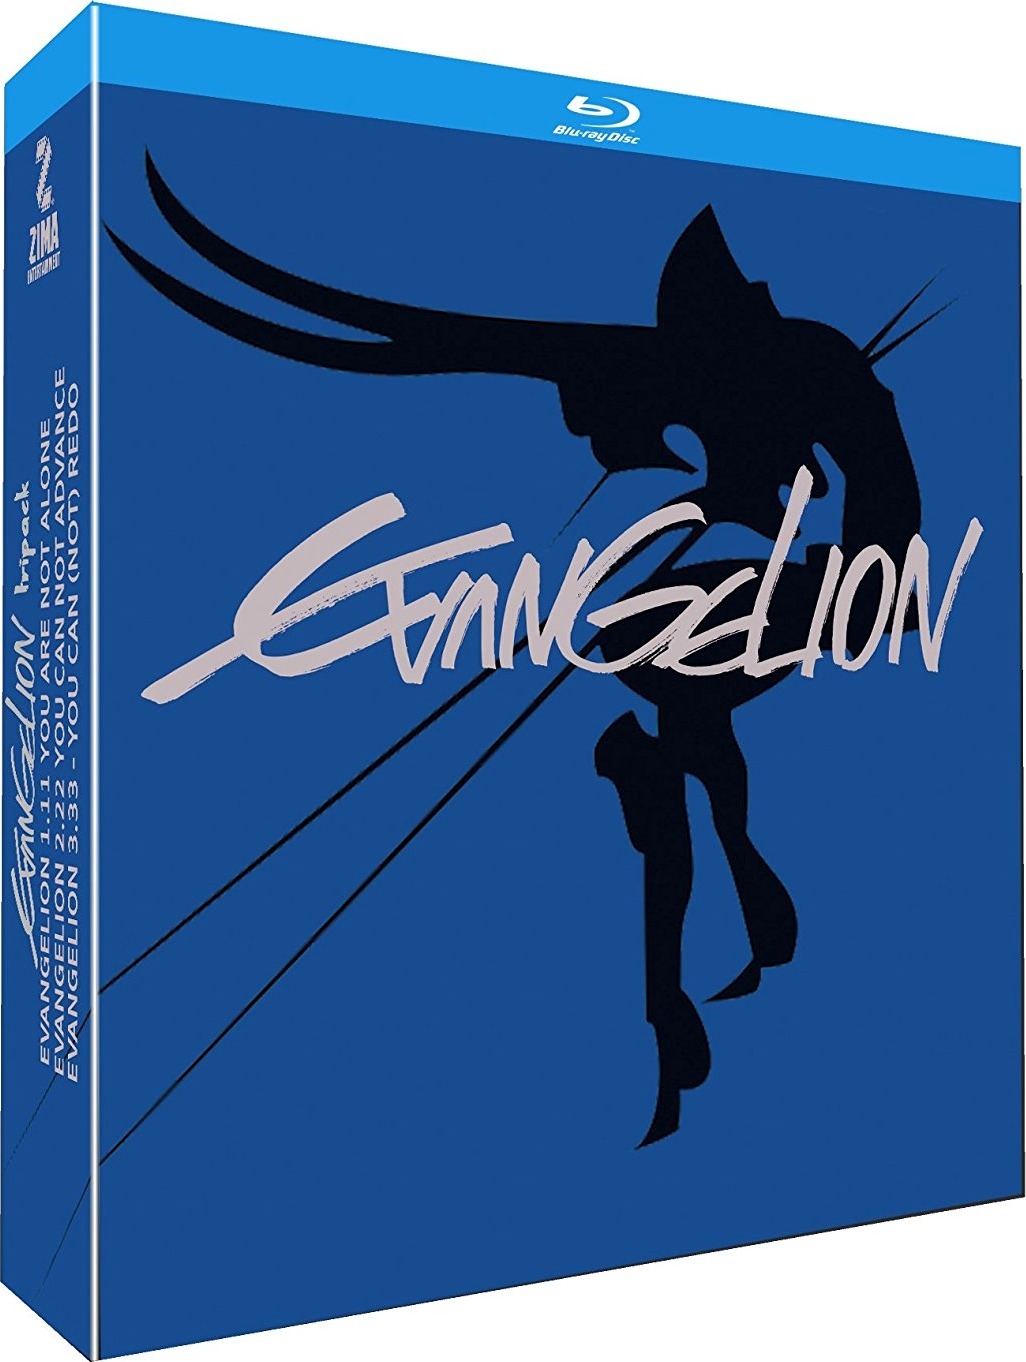 Evangelion Tripack (2007-2012) Evangelion: Colección de 3 Películas (2007-2012) [AC3/E-AC3 5.1/2.0 + SUP/SRT] [Blu Ray] [Prime Video] 166609_front